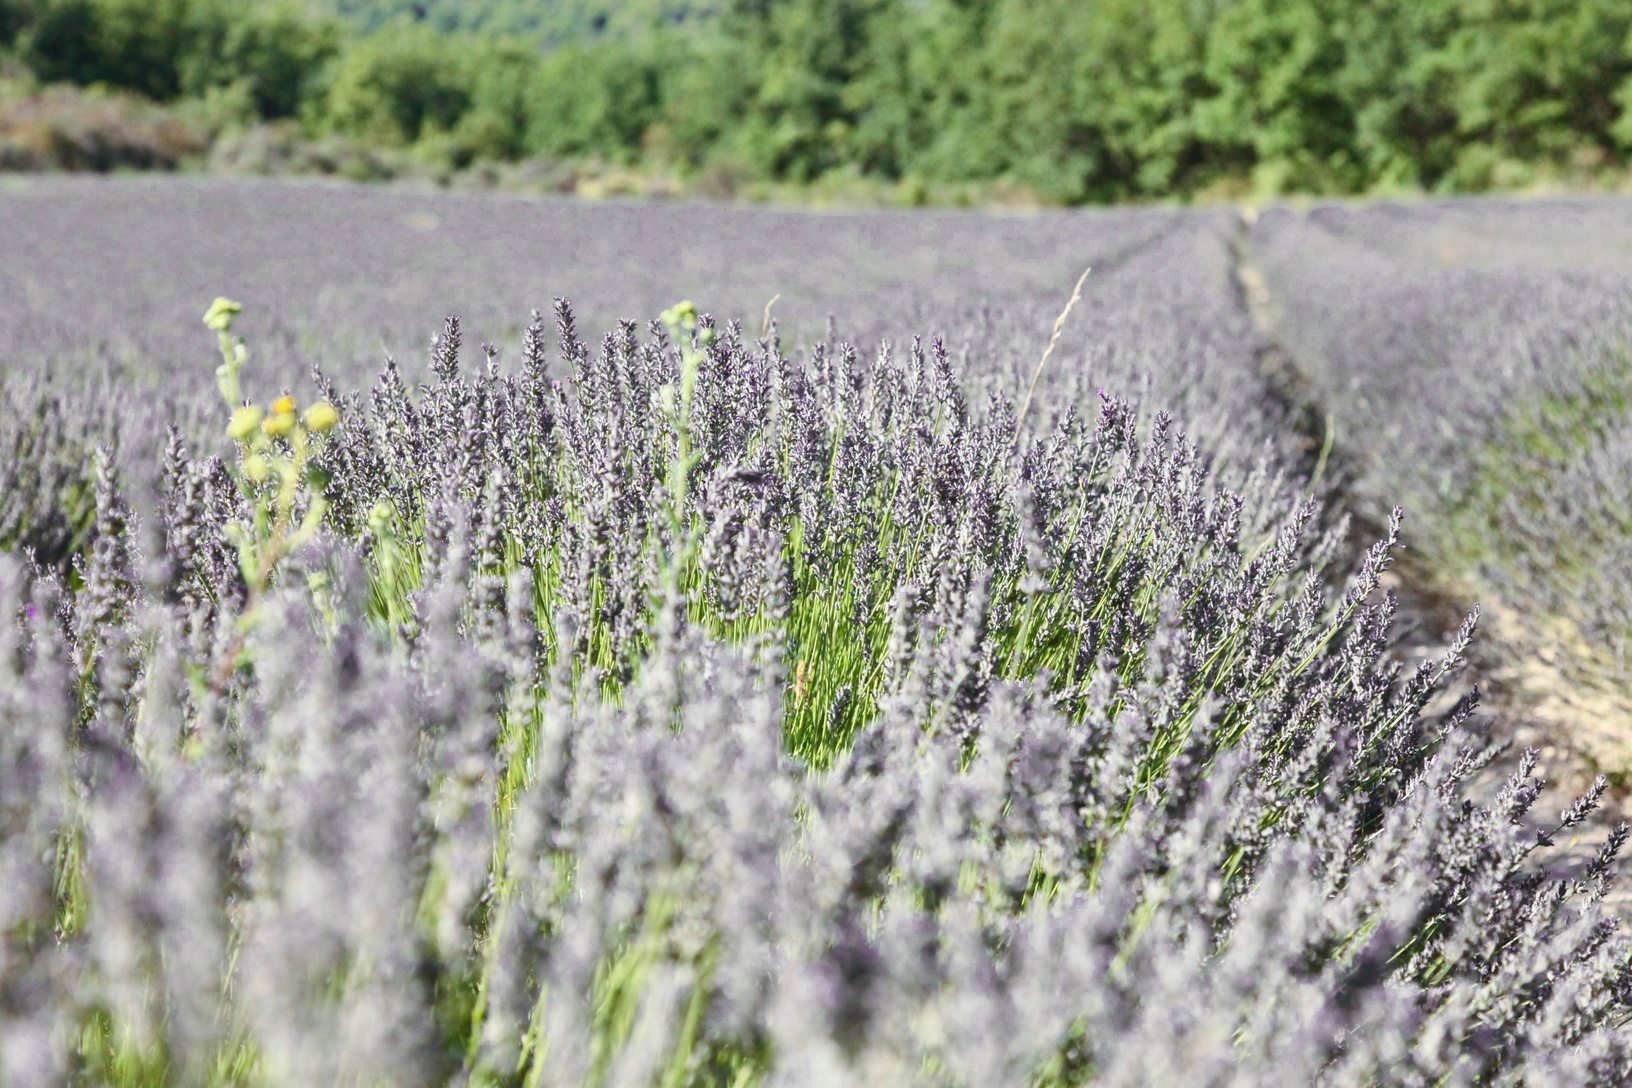 南フランスはセージ、ラベンダーなどが有名ですが、メディカルアロマが代替医療の主でもあるように、ハーブ全般の栽培がとりわけ盛んな地域です。夏から秋にかけては地域全体から香りを発しているかのように心地よい芳香に包まれます。